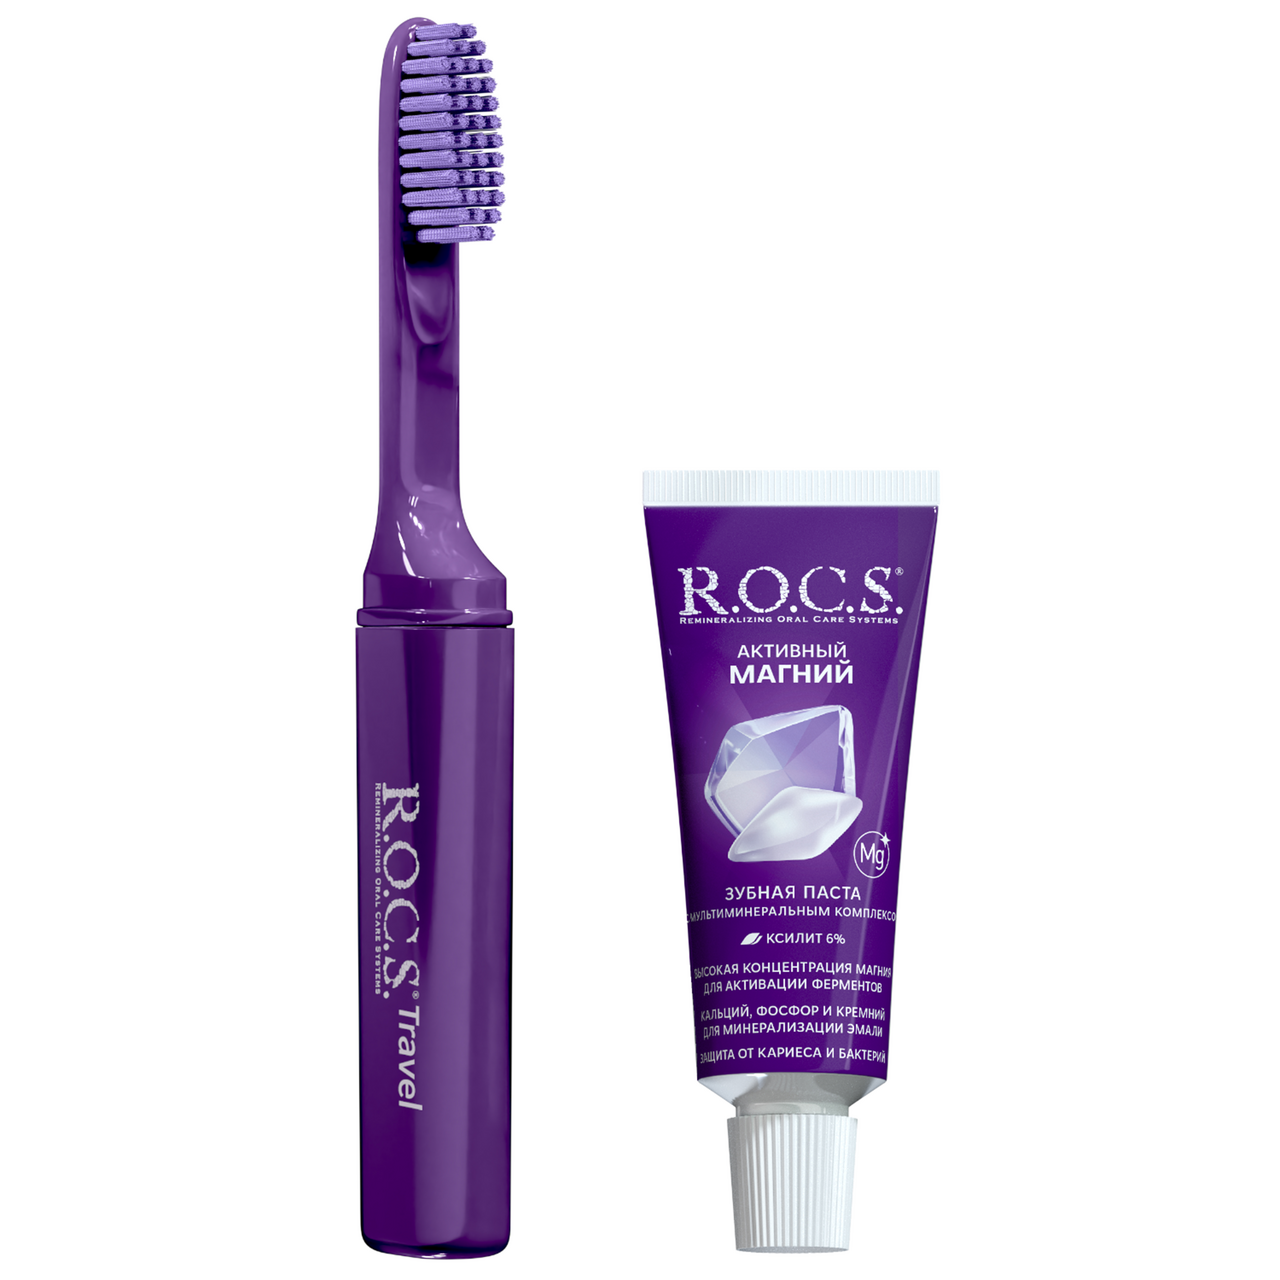 Набор R.O.C.S. для путешествий "Активный магний": зубная паста 25 г + складная щетка 1 шт